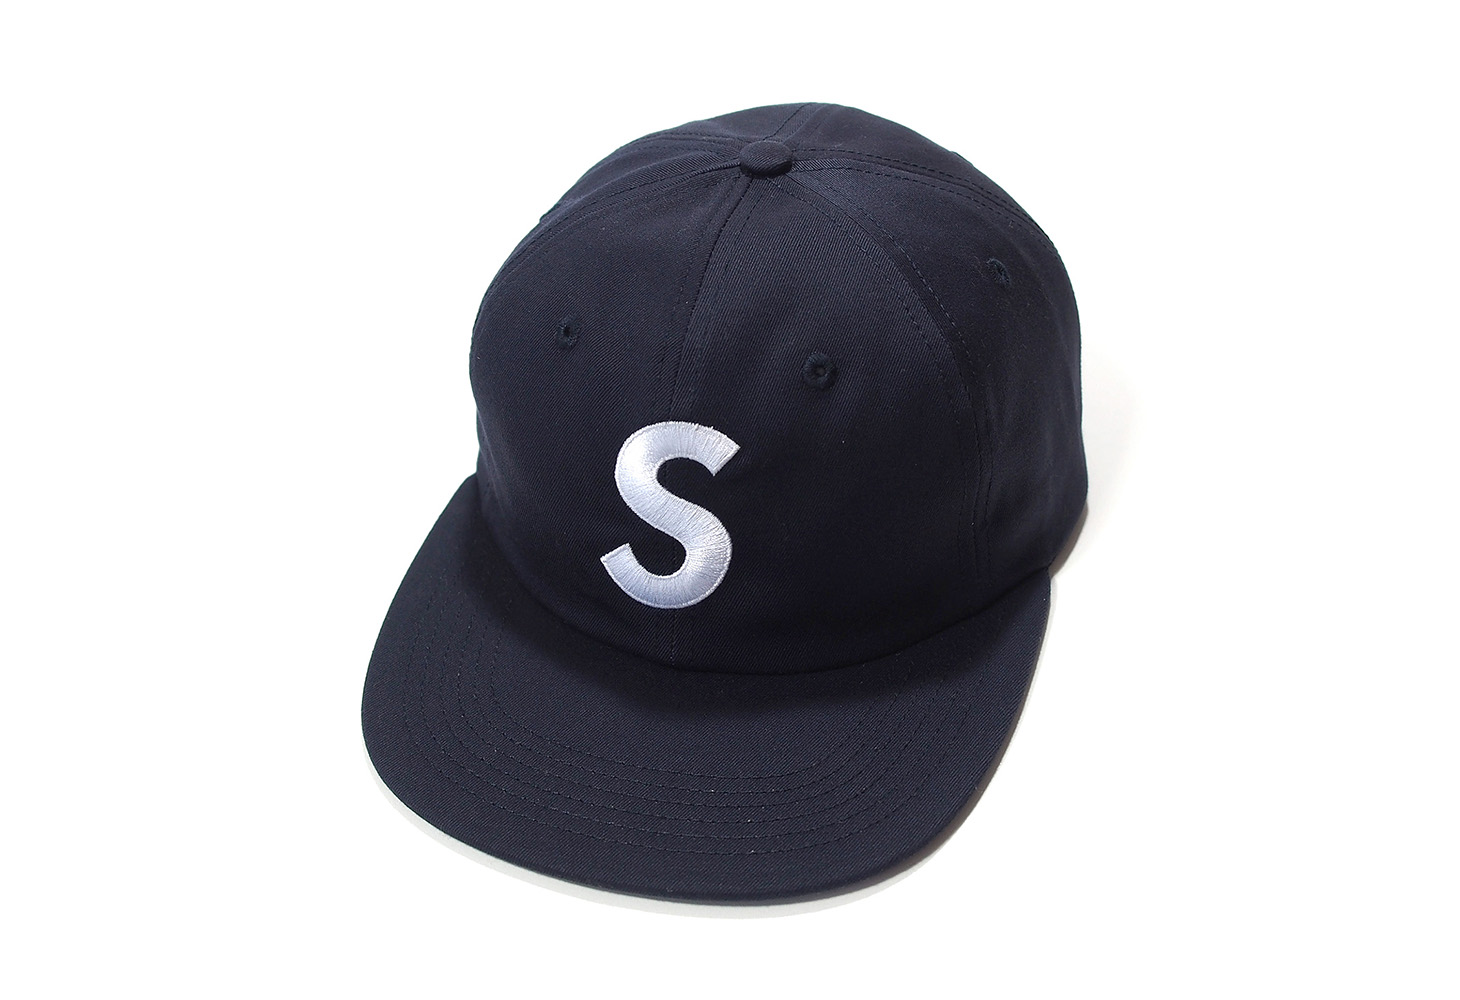 Supreme S Logo 6 Panel Sロゴ CAP 黒supremeオンライン状態